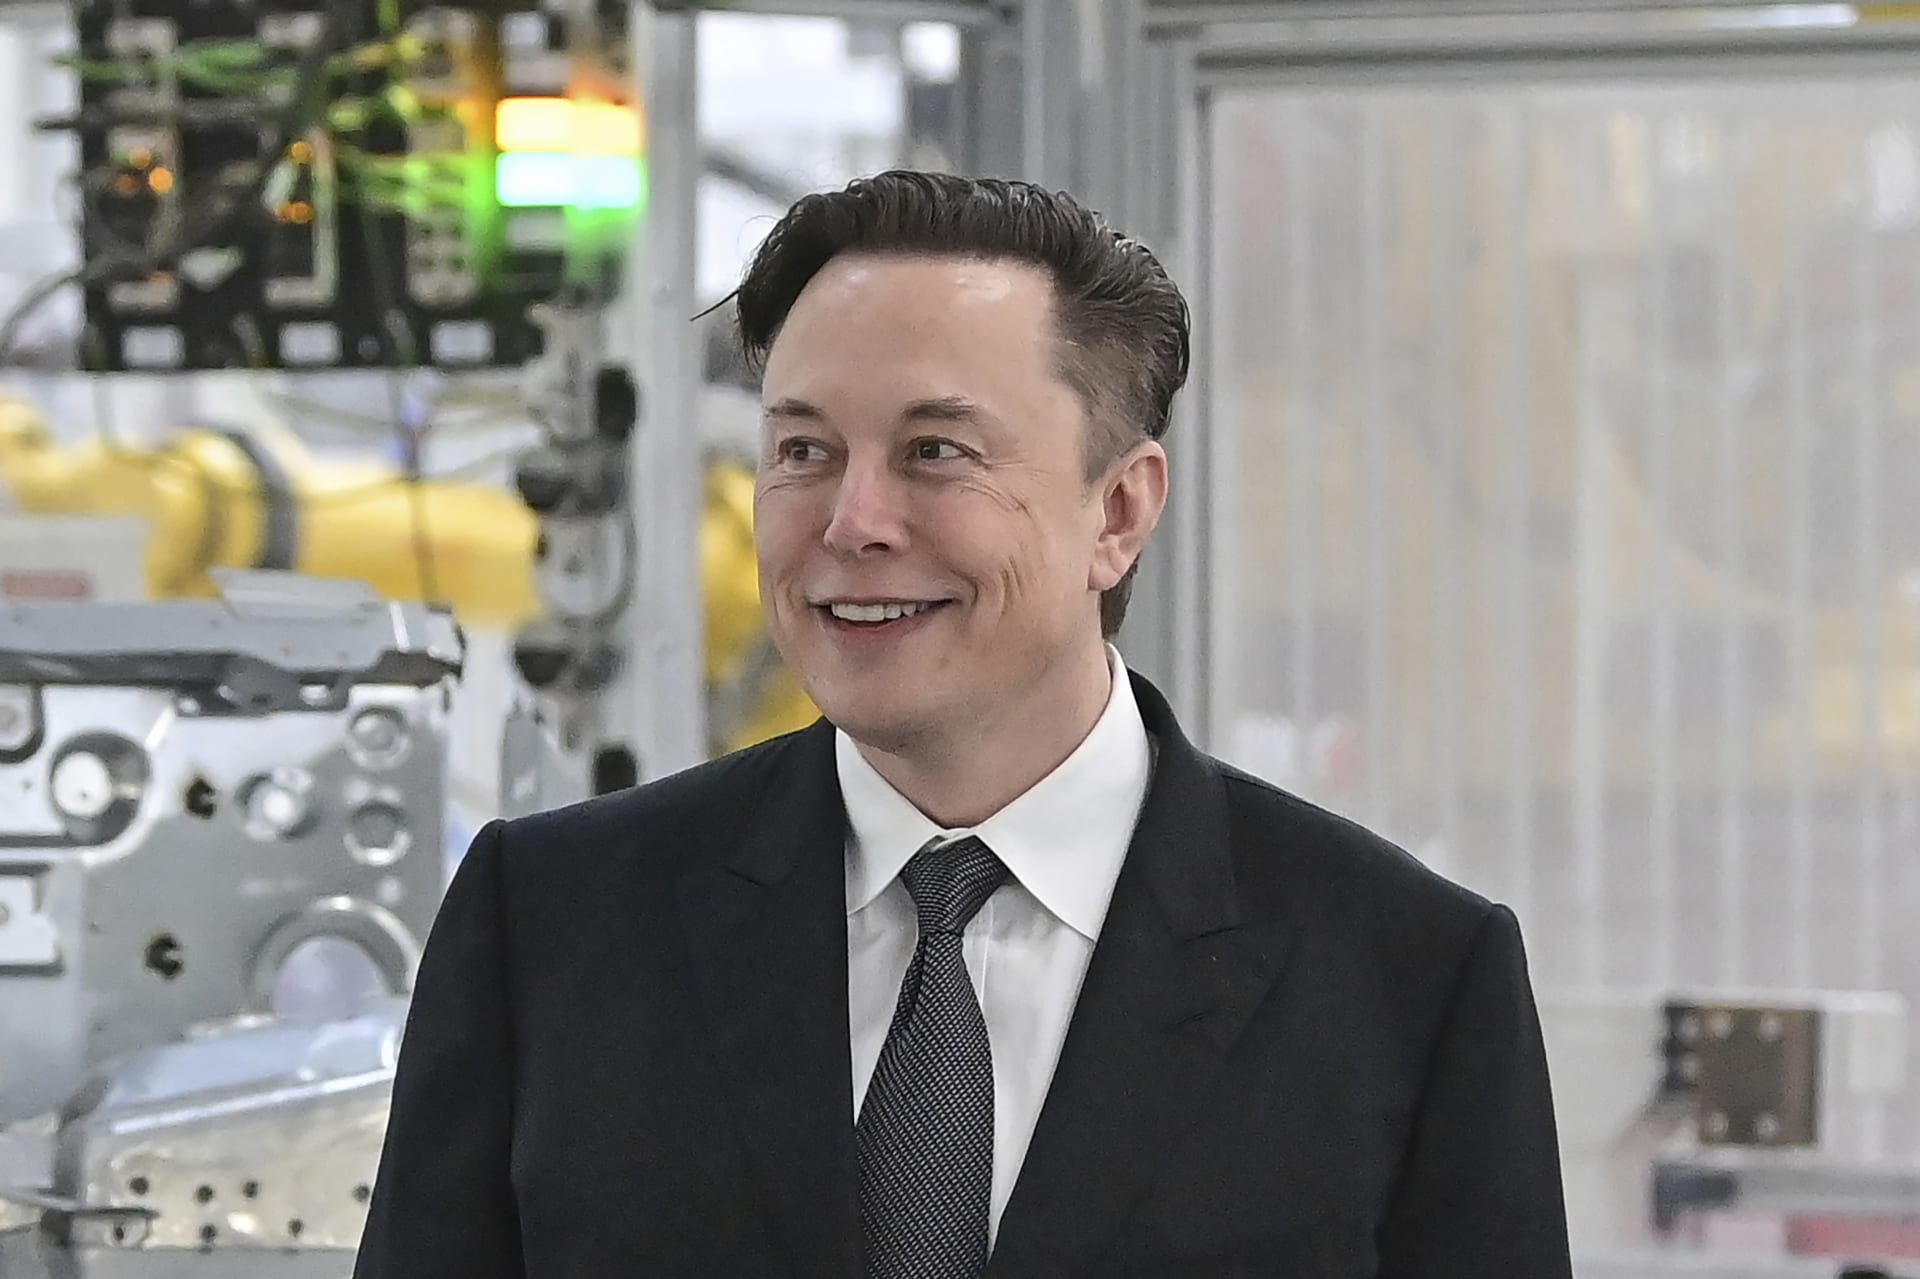 Jeden z nejbohatších lidí na světě Elon Musk má ve svém portfoliu automobilku Tesla, vesmírnou agenturu SpaceX či sociální síť Twitter.